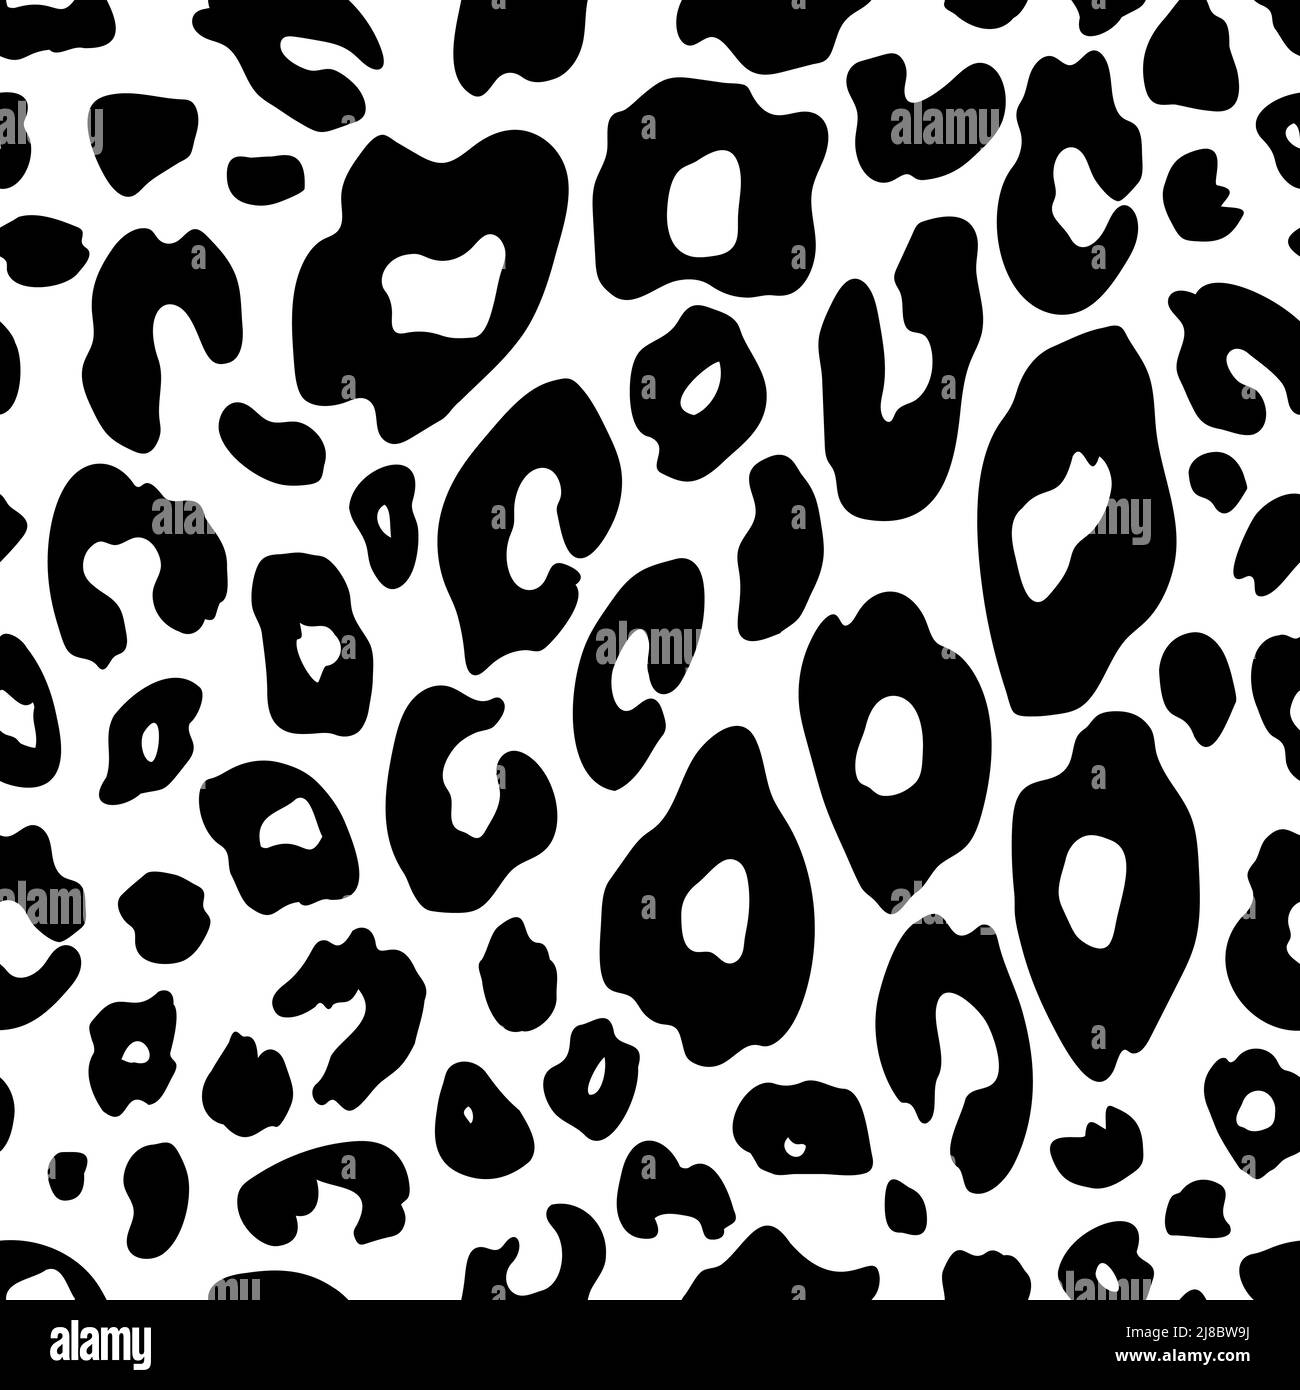 Nahtloses Leopardenmuster. Schwarze Flecken auf weißem Hintergrund. Vintage Animal Print aus den Jahren 80s-90s. Vektorgrafik. Stock Vektor